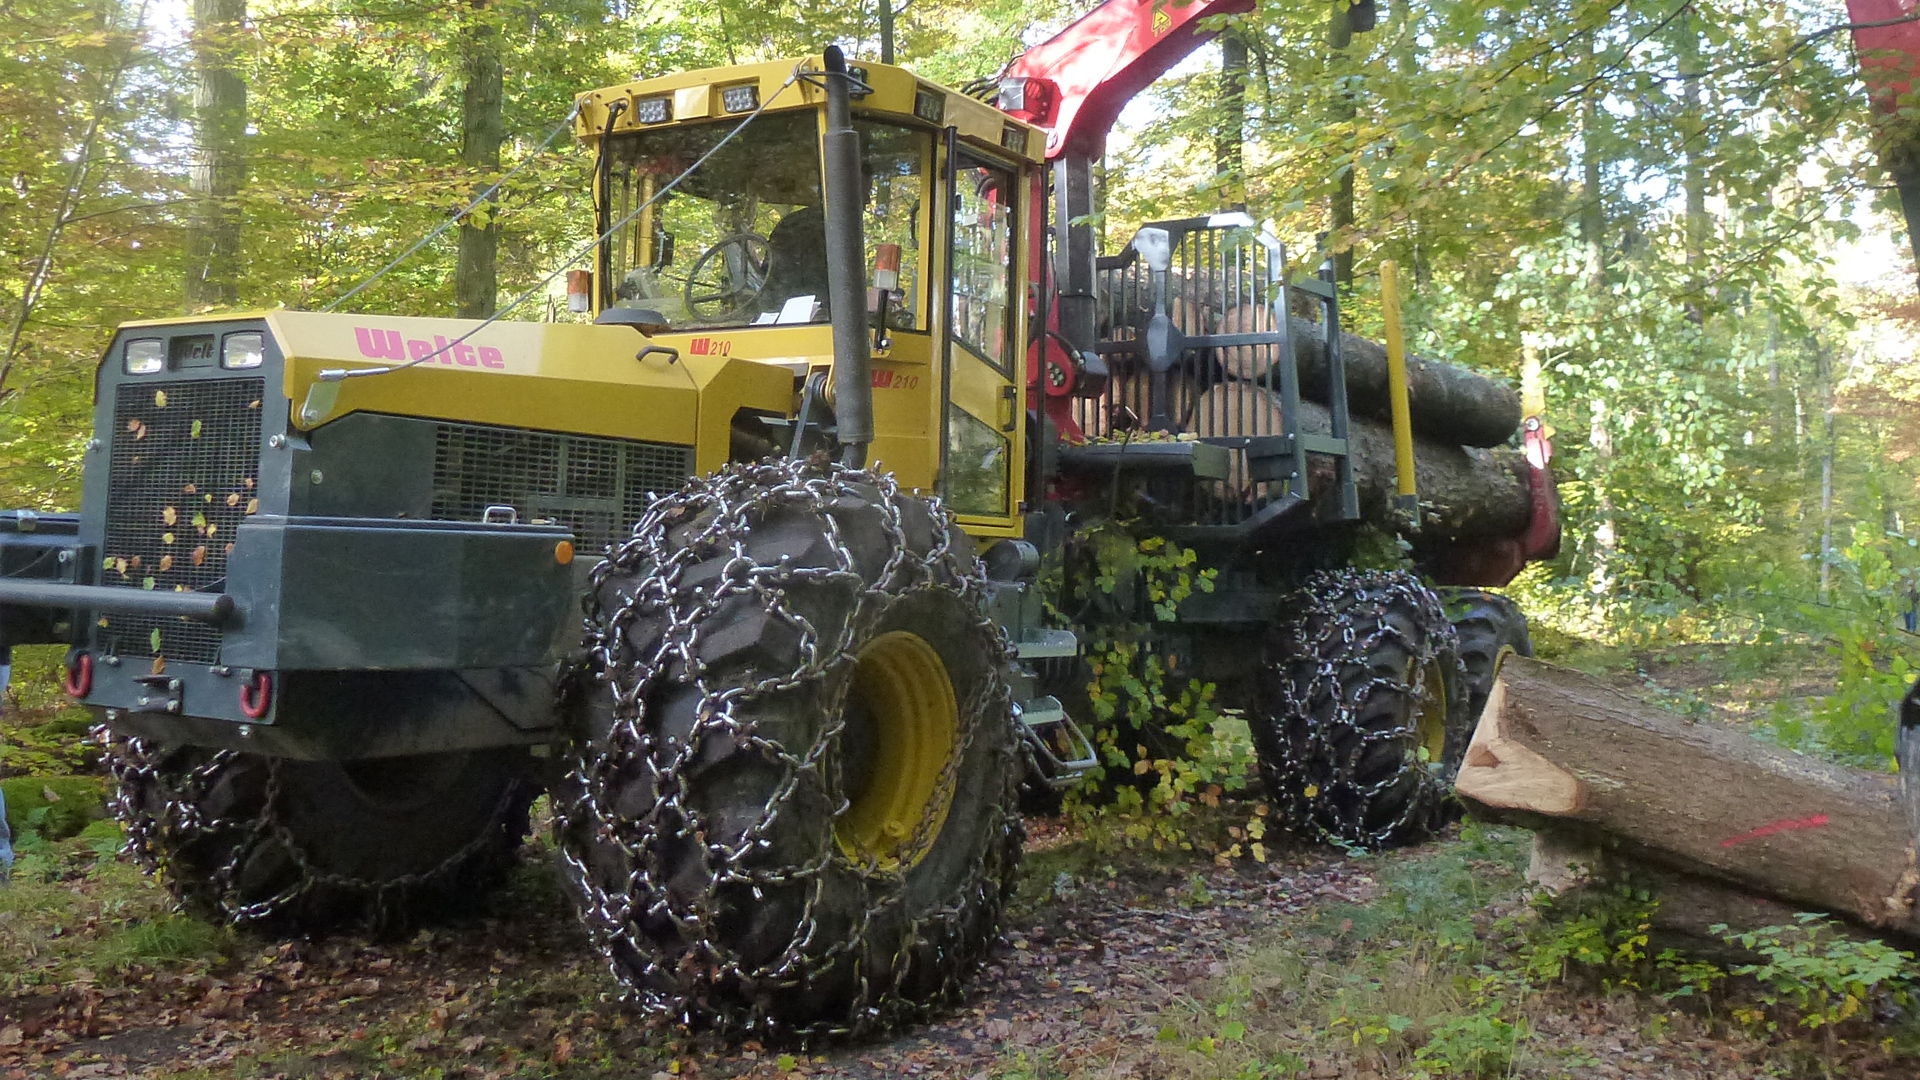 Lion-Group Forst: Logistiker in Forst (Lausitz) versorgen den Rest der Welt  mit Landmaschinen